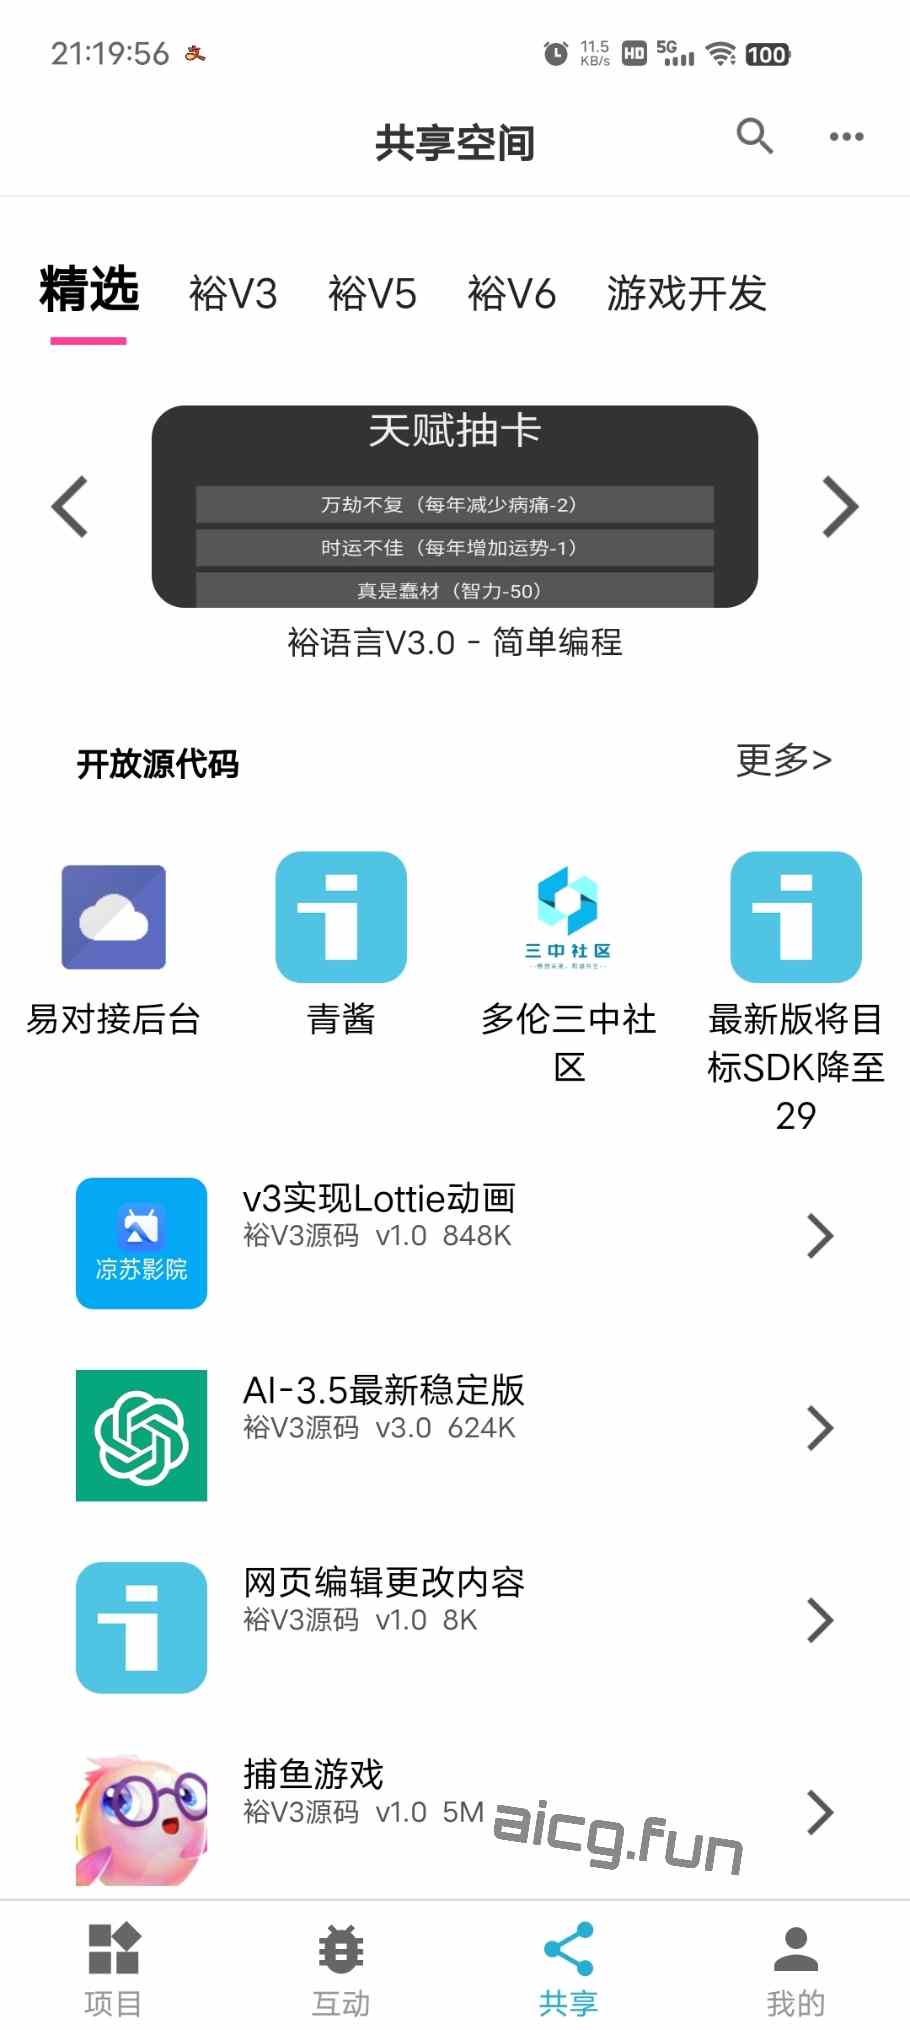 ［12.4更新］iApp VIP会员解锁版 白银VIP 裕V5-凌貓博客